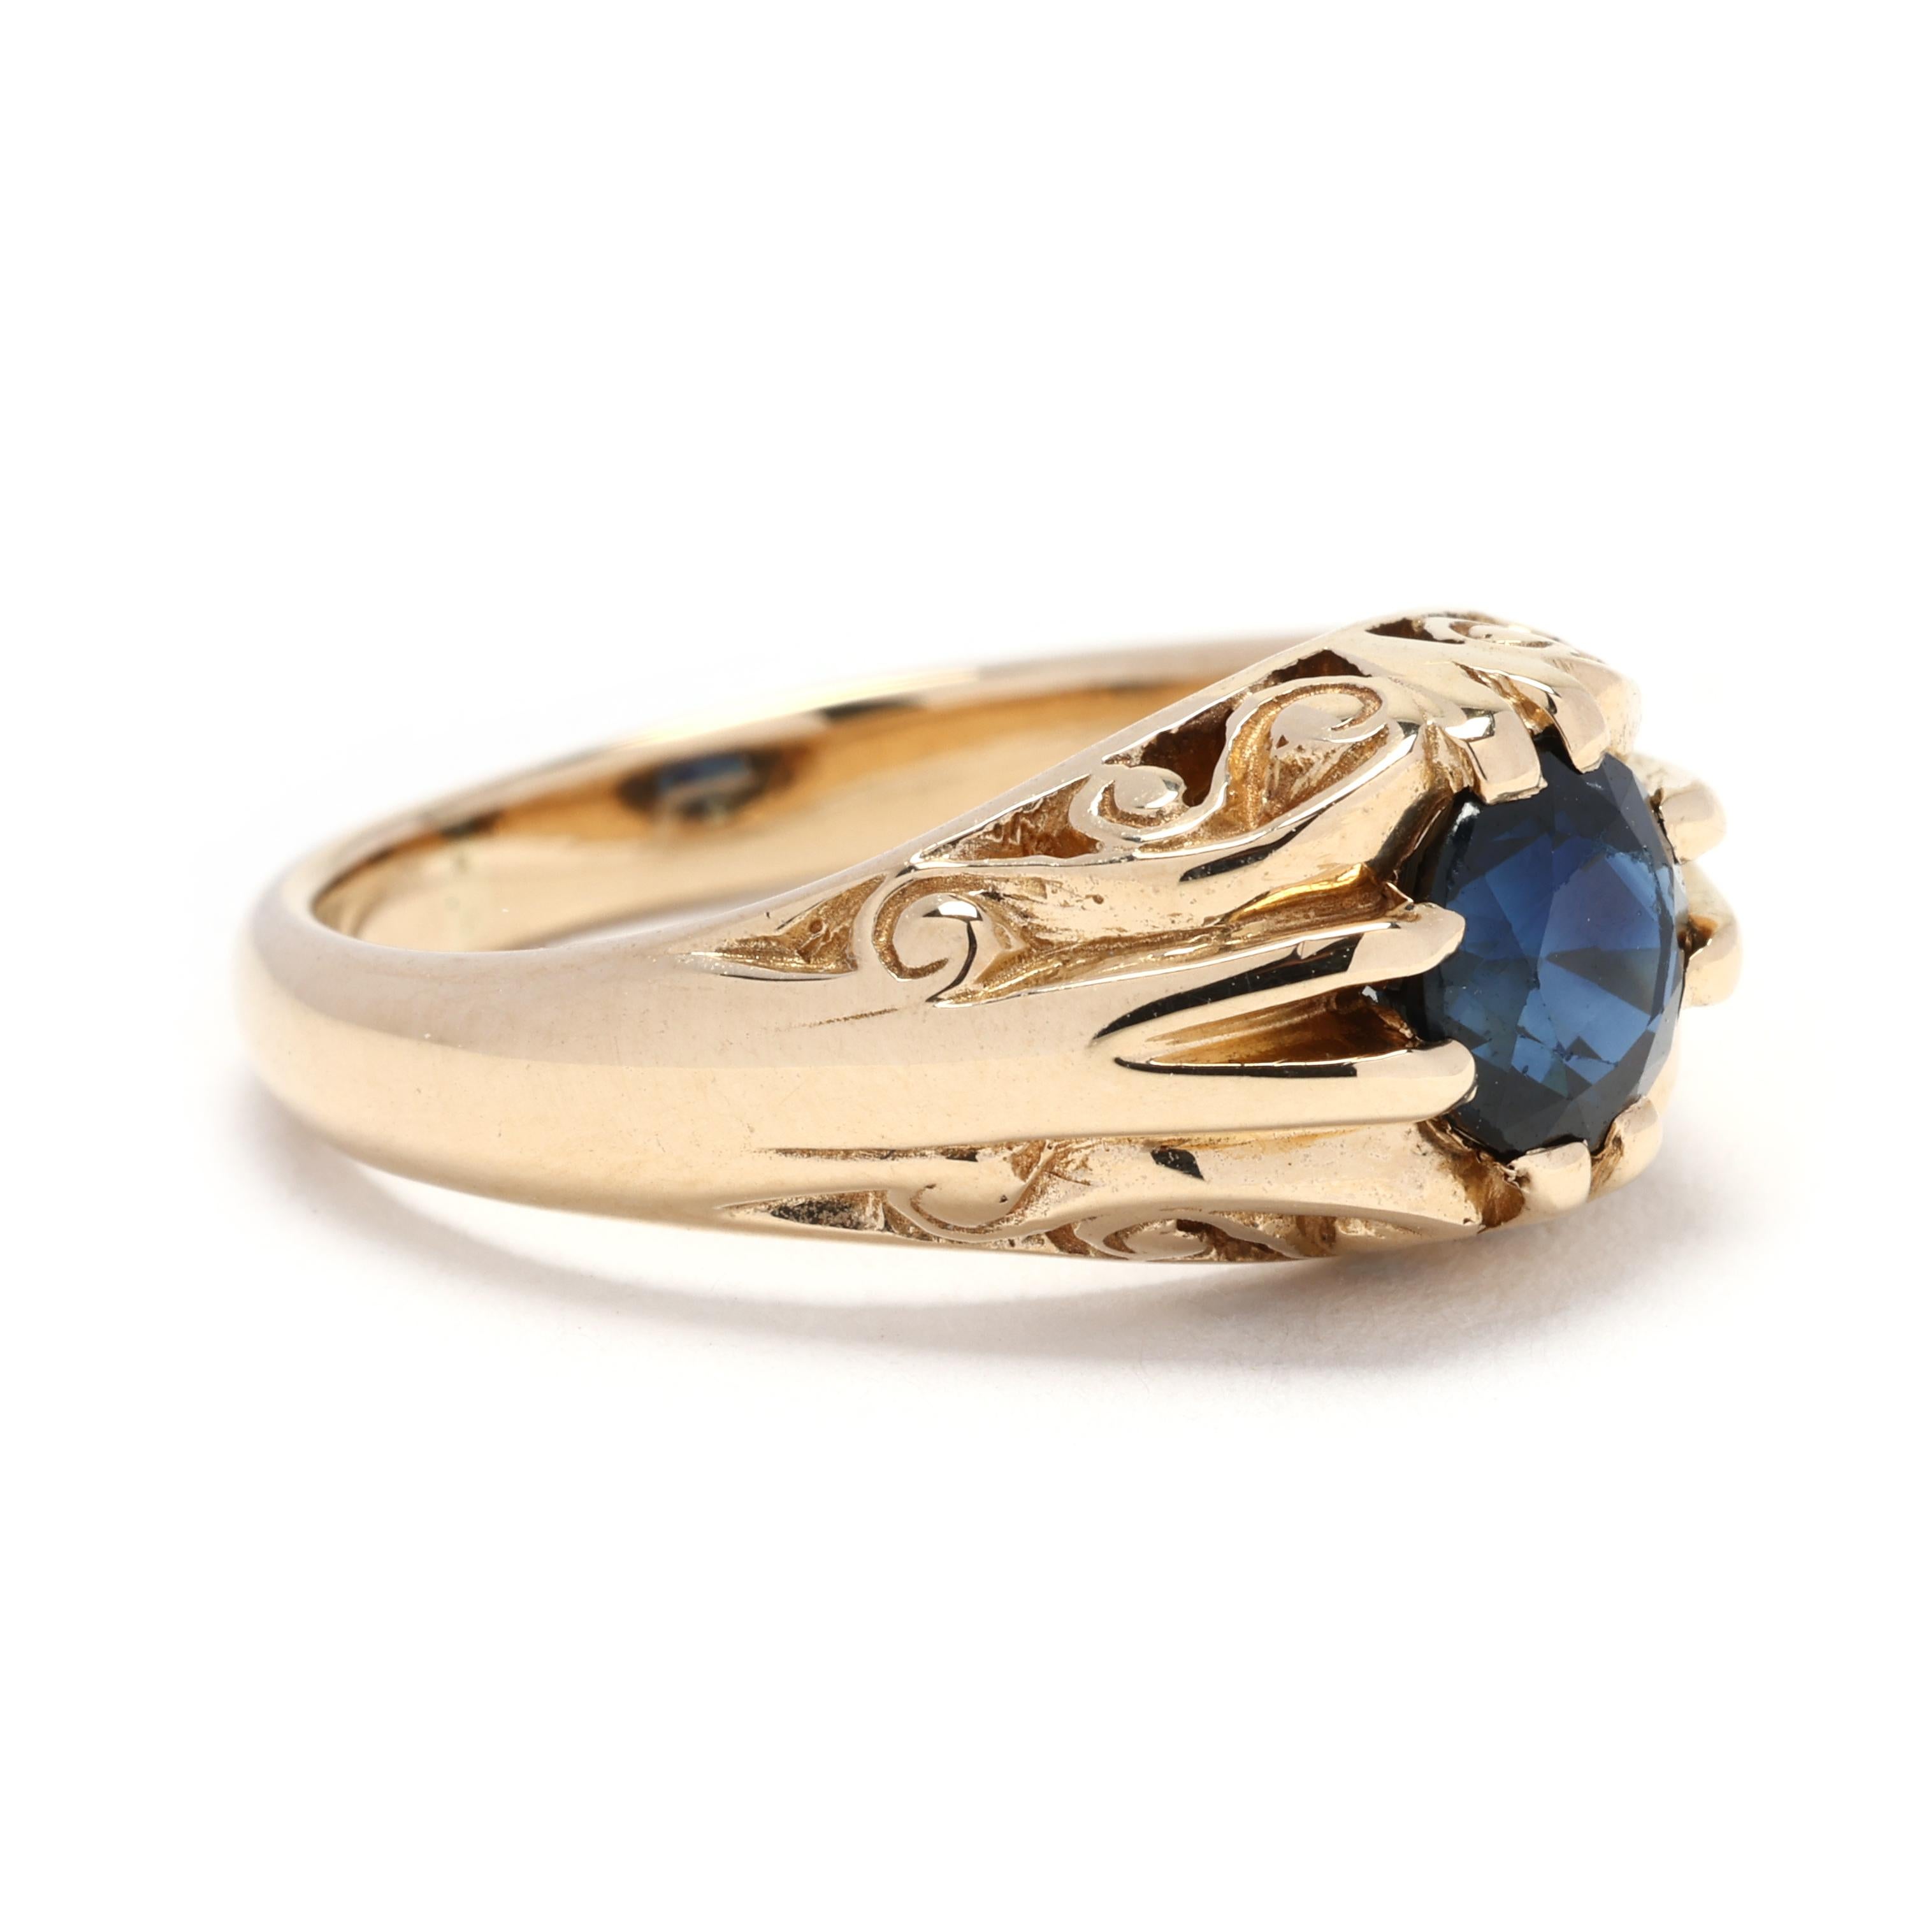 Dieser antike 0.50ctw Sapphire Swirl Ring ist eine wahre Vintage-Schönheit. Dieser Ring aus 14-karätigem Gelbgold zeigt ein wirbelndes Design, das mit atemberaubenden Saphiren verziert ist. Der 0,50ctw Saphir Stein schaffen eine faszinierende blauen